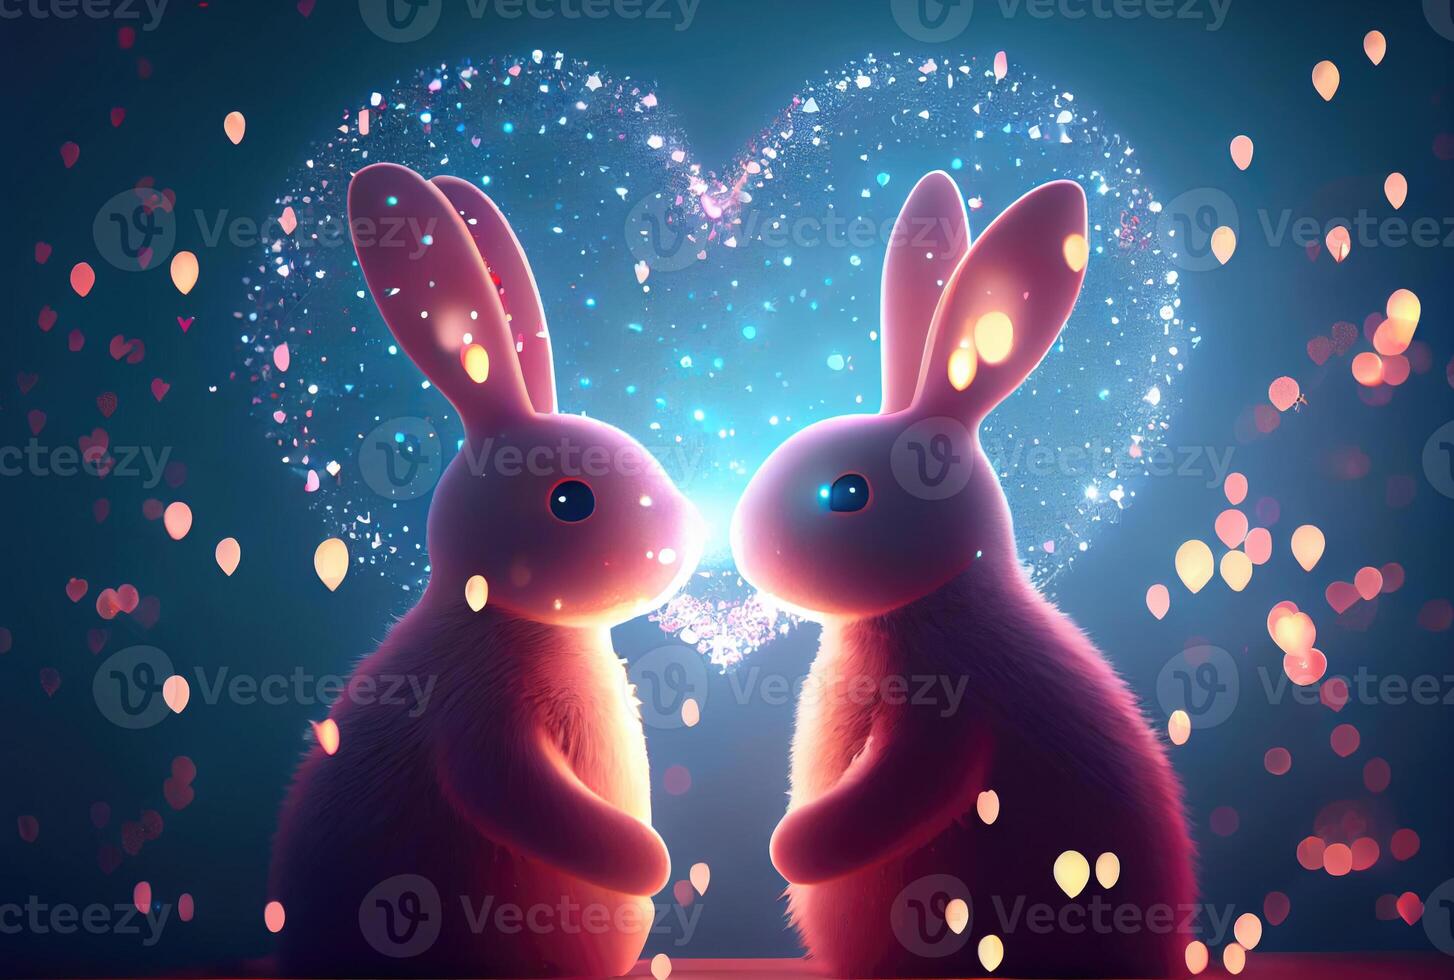 Mice 🎺 | Cute disney wallpaper, Cute couple wallpaper, Cute rabbit images